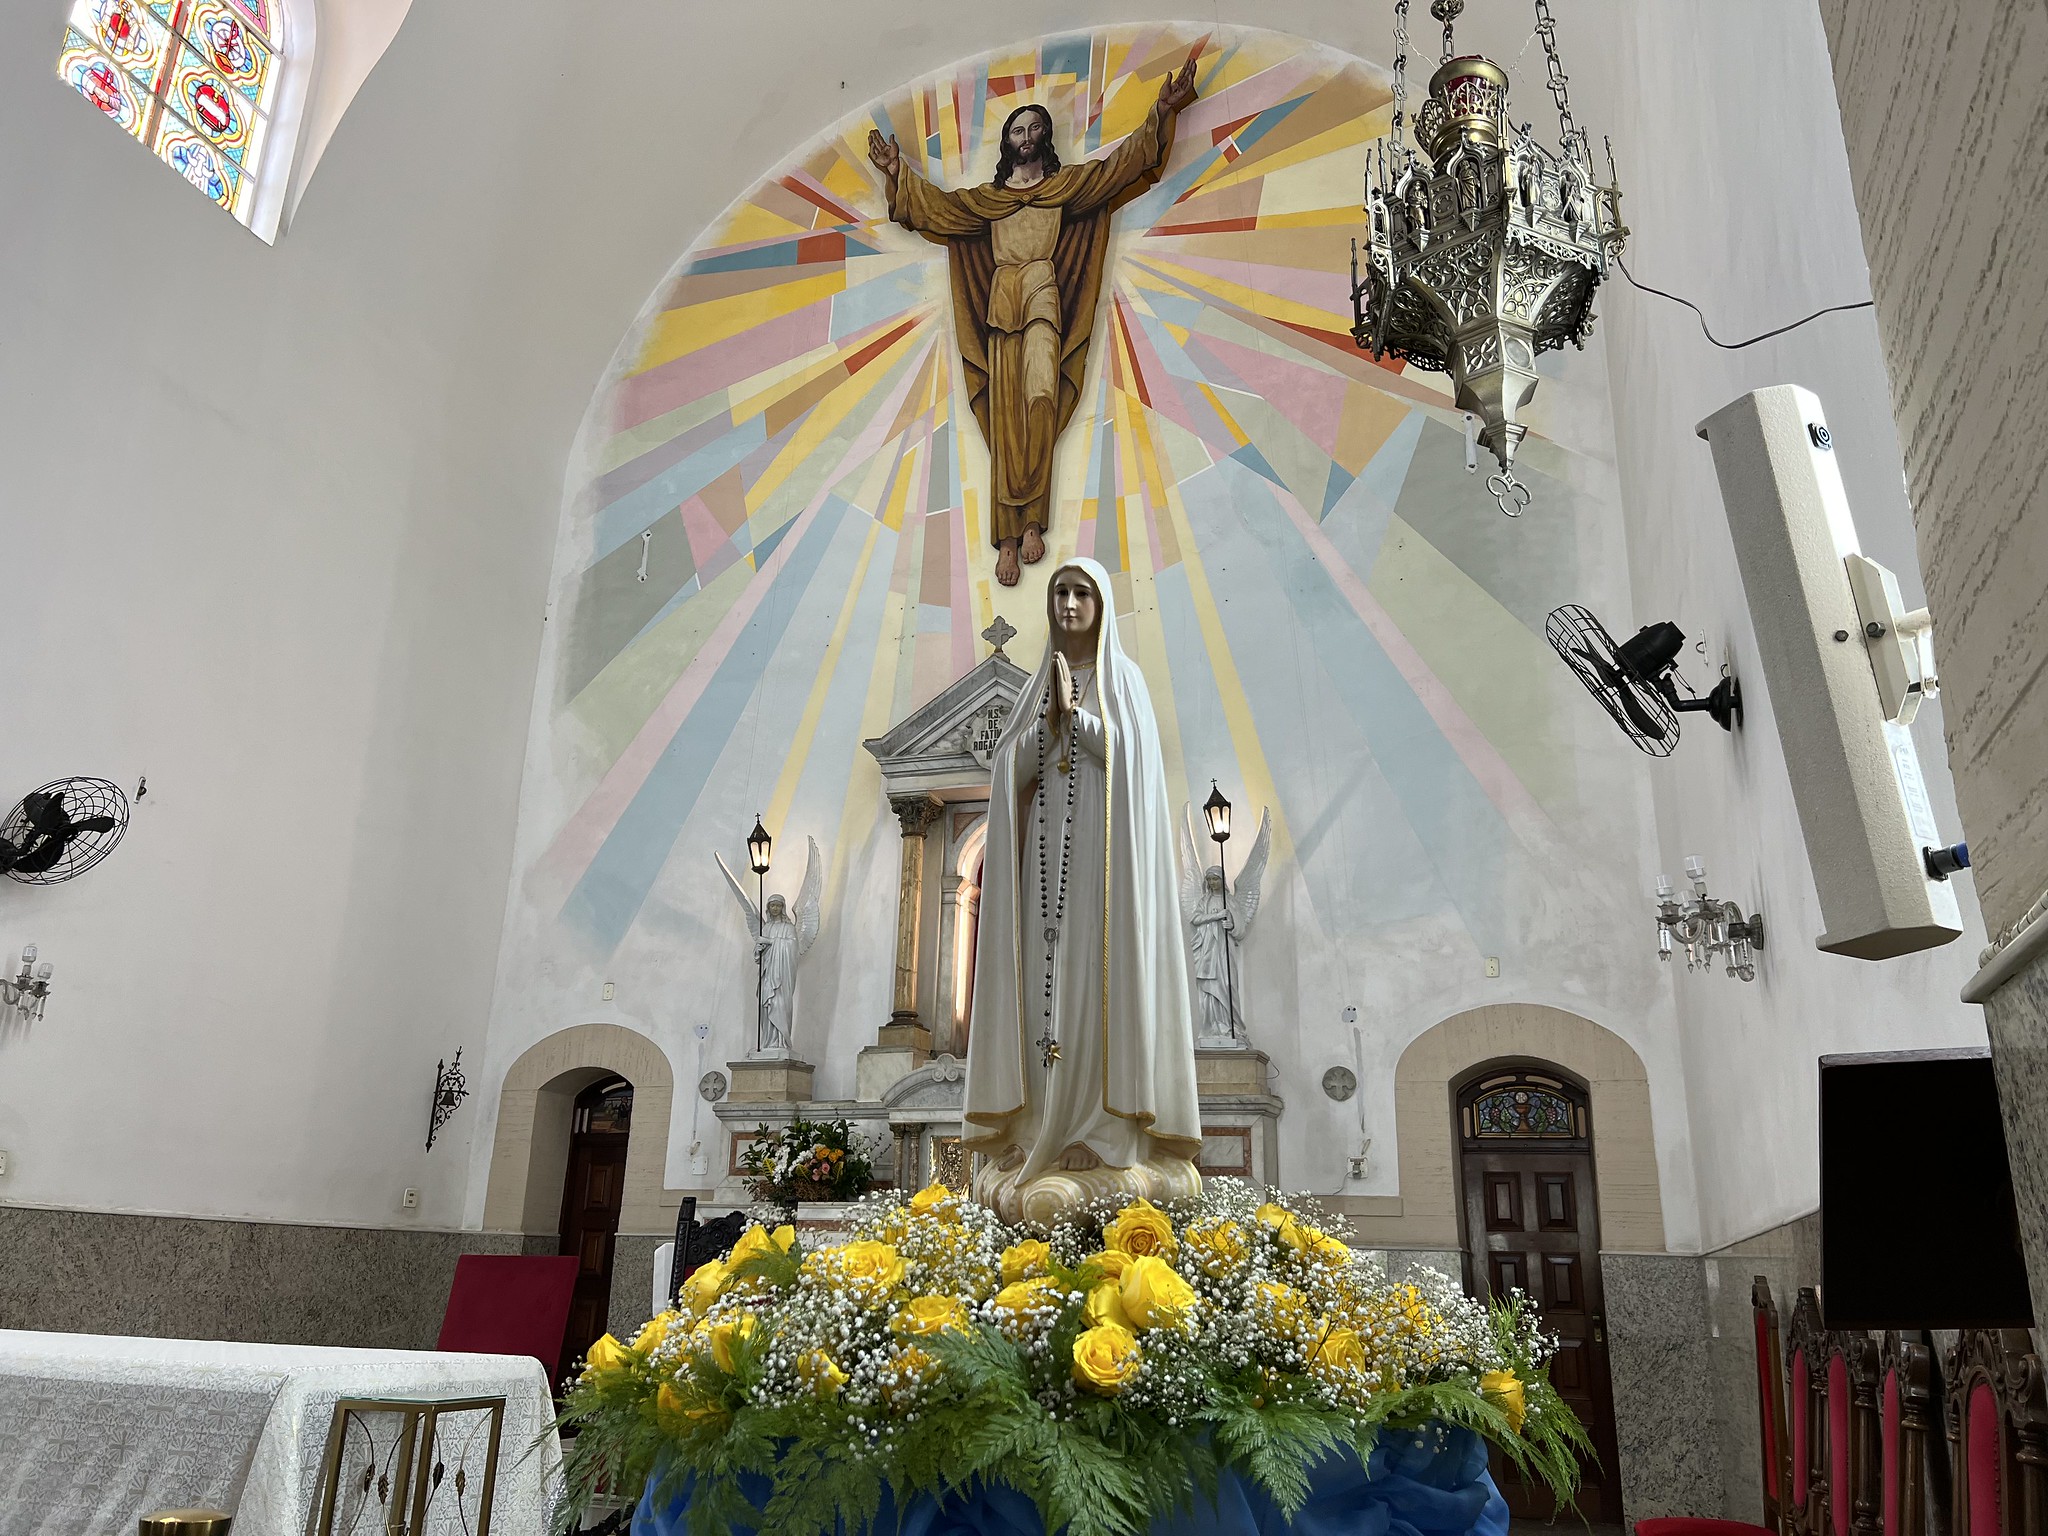 Festividades alusivas à Nossa Senhora de Fátima começam nesta sexta-feira (3), em Guarujá